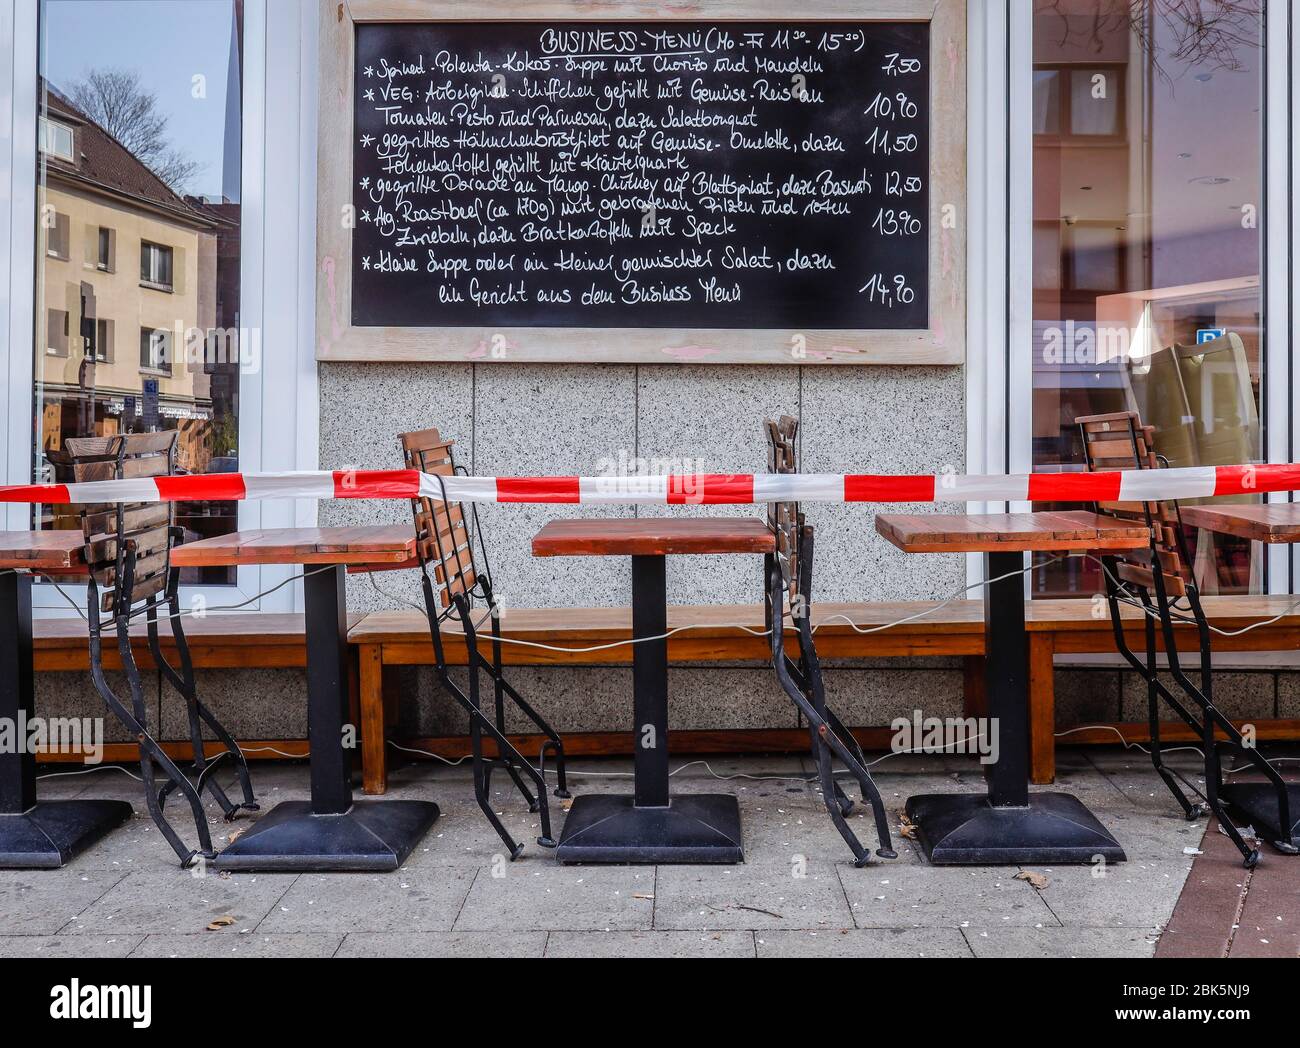 Restaurants fermés en raison de la pandémie de corona, café Zucca avec ruban adhésif, gastronomie extérieure fermée, Essen, région de la Ruhr, Rhénanie-du-Nord-Westphalie, Allemagne Banque D'Images